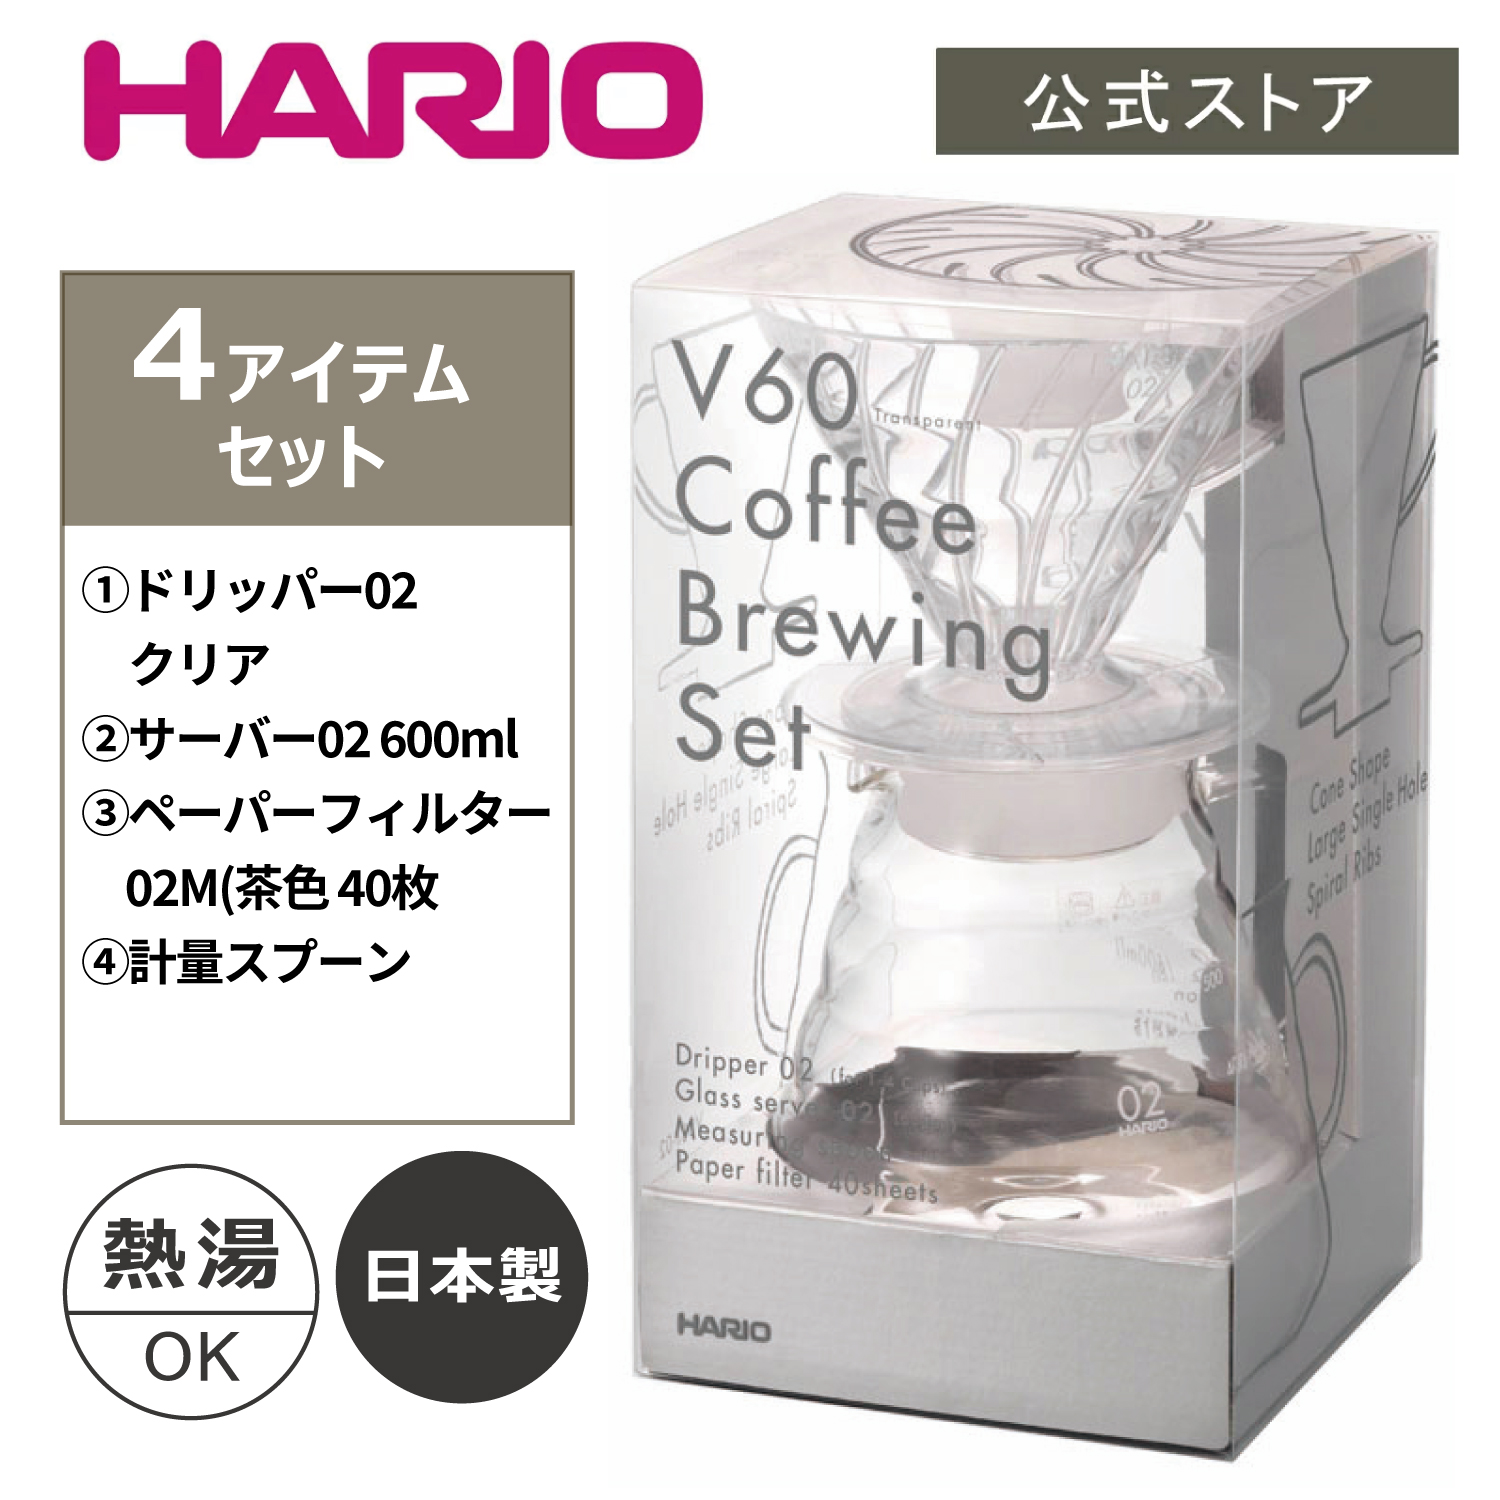 新生活や珈琲のハンドドリップ入門に最適。  HARIO V60コーヒーブリューイングセット